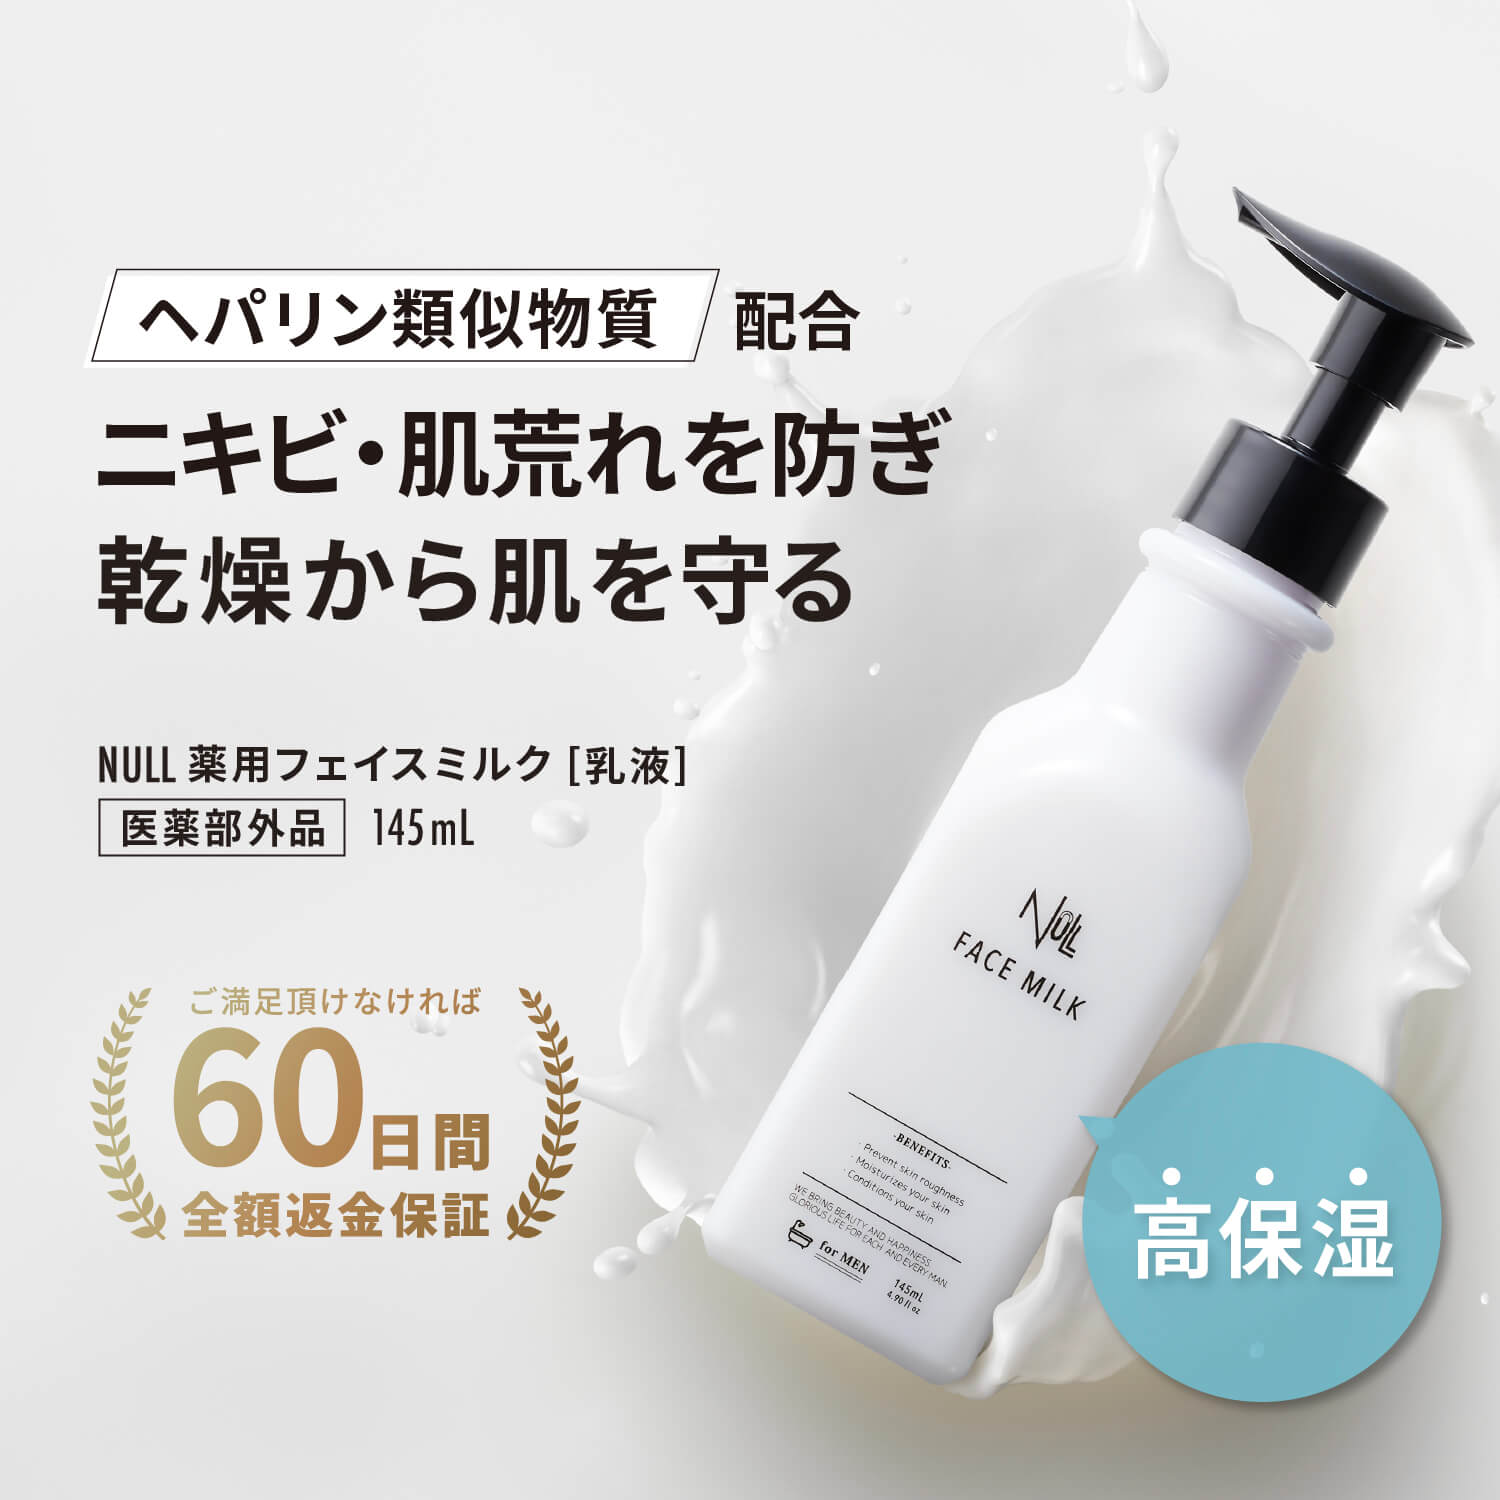 NULL 薬用フェイスミルク 乳液【ヘパリン類似物質 配合】